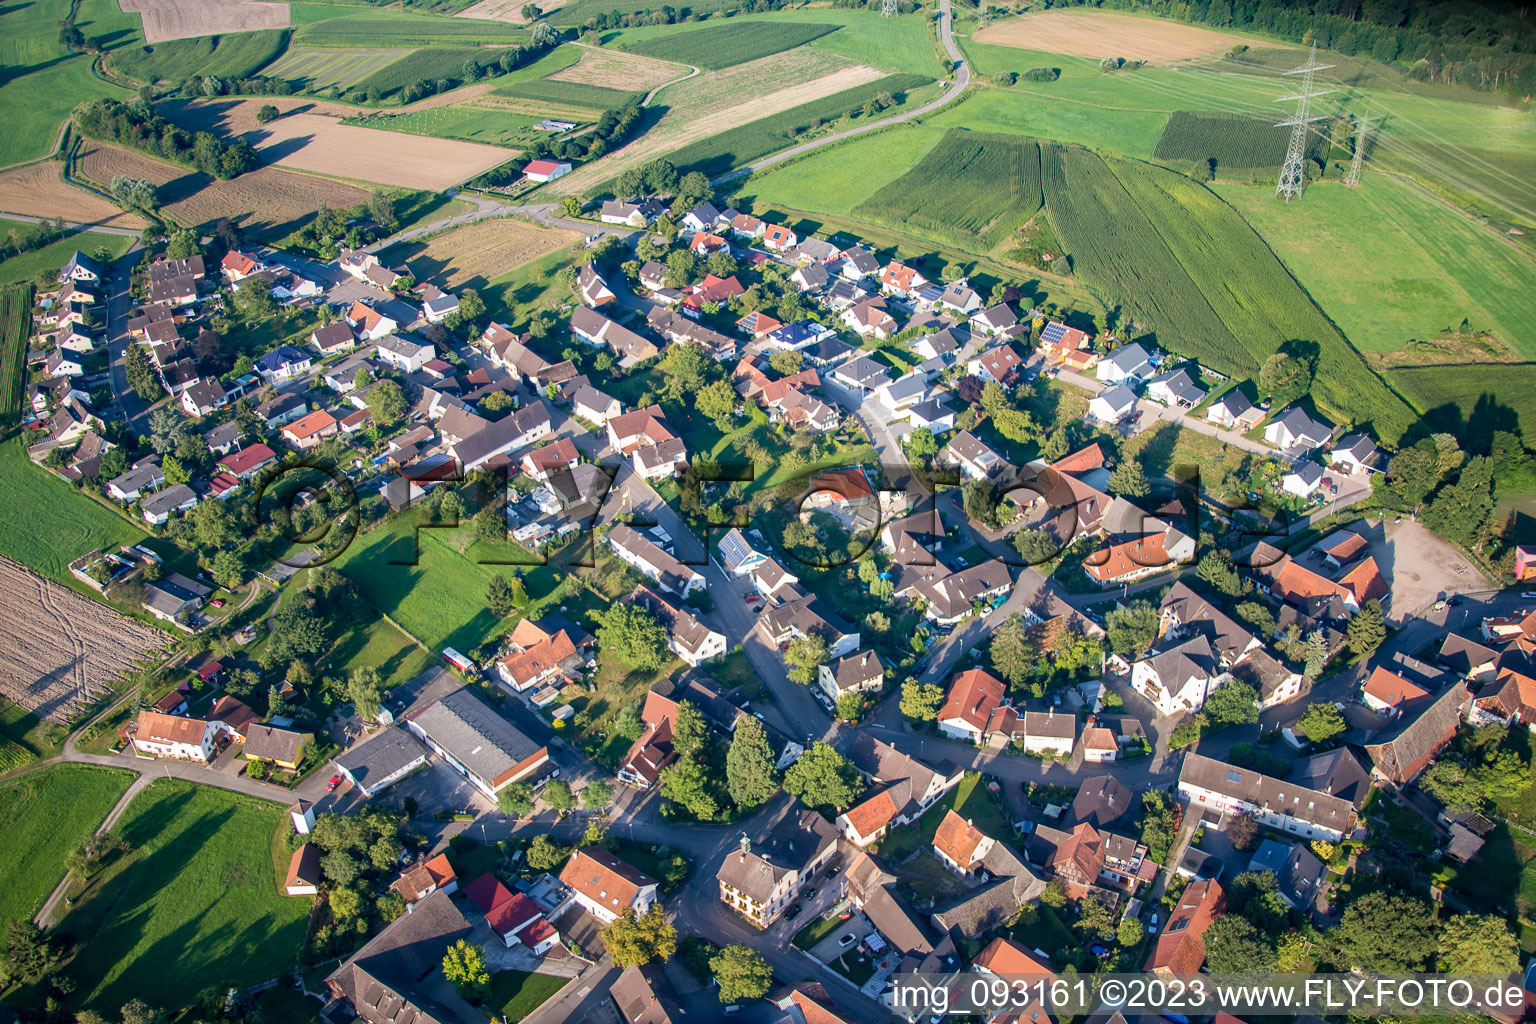 Vue aérienne de Quartier Zierolshofen in Kehl dans le département Bade-Wurtemberg, Allemagne